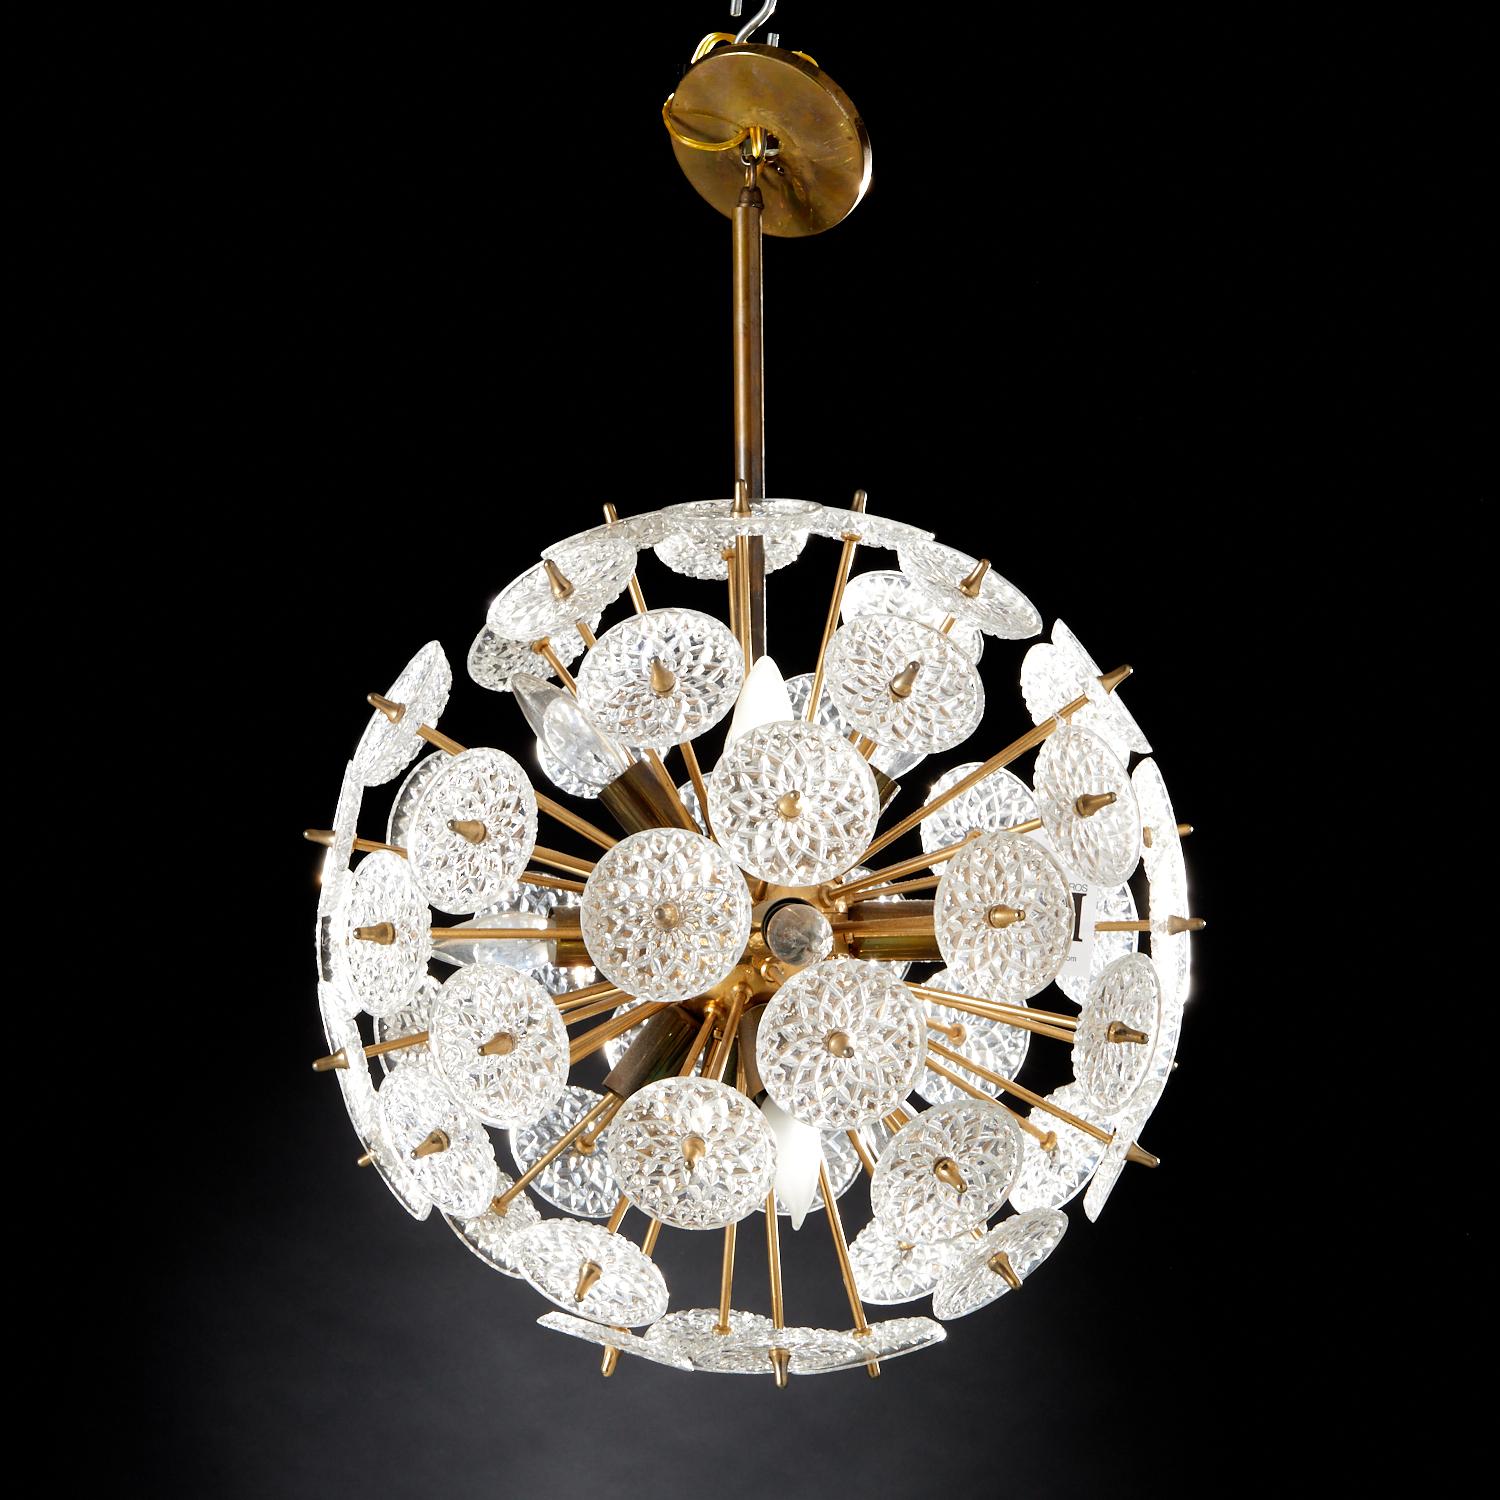 Val Saint Lambert um 1960, belgisch, mit Messingarmatur und Kristallglasblumen, eine Pendelleuchte im Stil von Emil Stejnar. Eine aufsehenerregende Leuchte, die sich wunderbar in eine Vielzahl von Design-Einstellungen einfügen würde. Andere zeigen